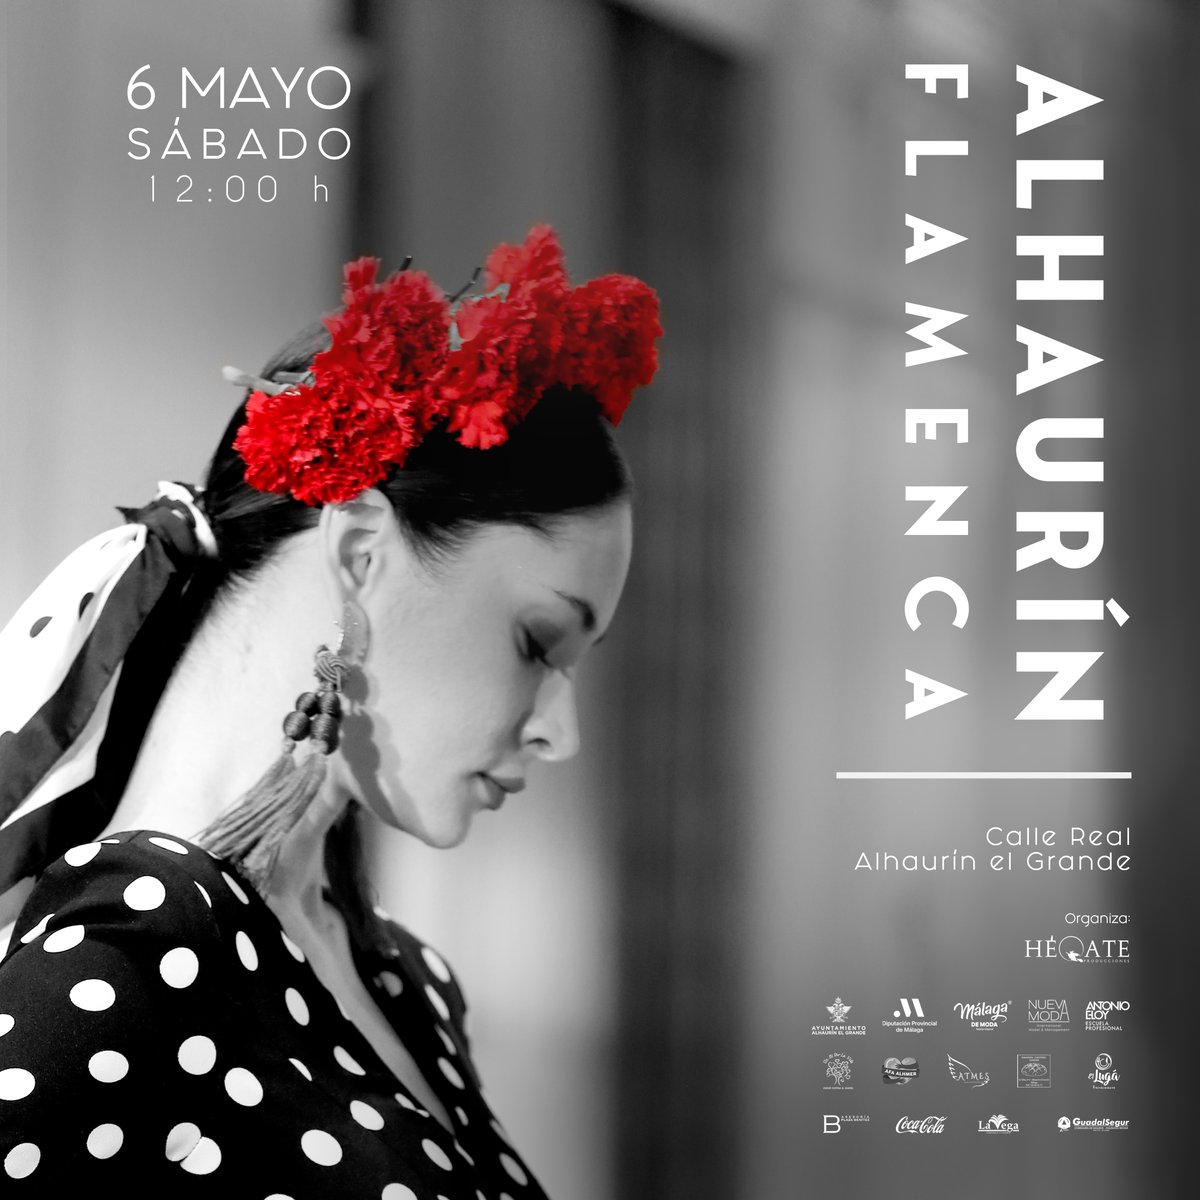 . @MalagaDeModa participa en la primera edición de la #pasarela Alhaurín #Flamenca.

✔️El evento se celebrará mañana, sábado, en la calle Real de #AlhaurínElGrande entre las 10.00 y las 14.00 horas.

👉 bit.ly/418Jlg8